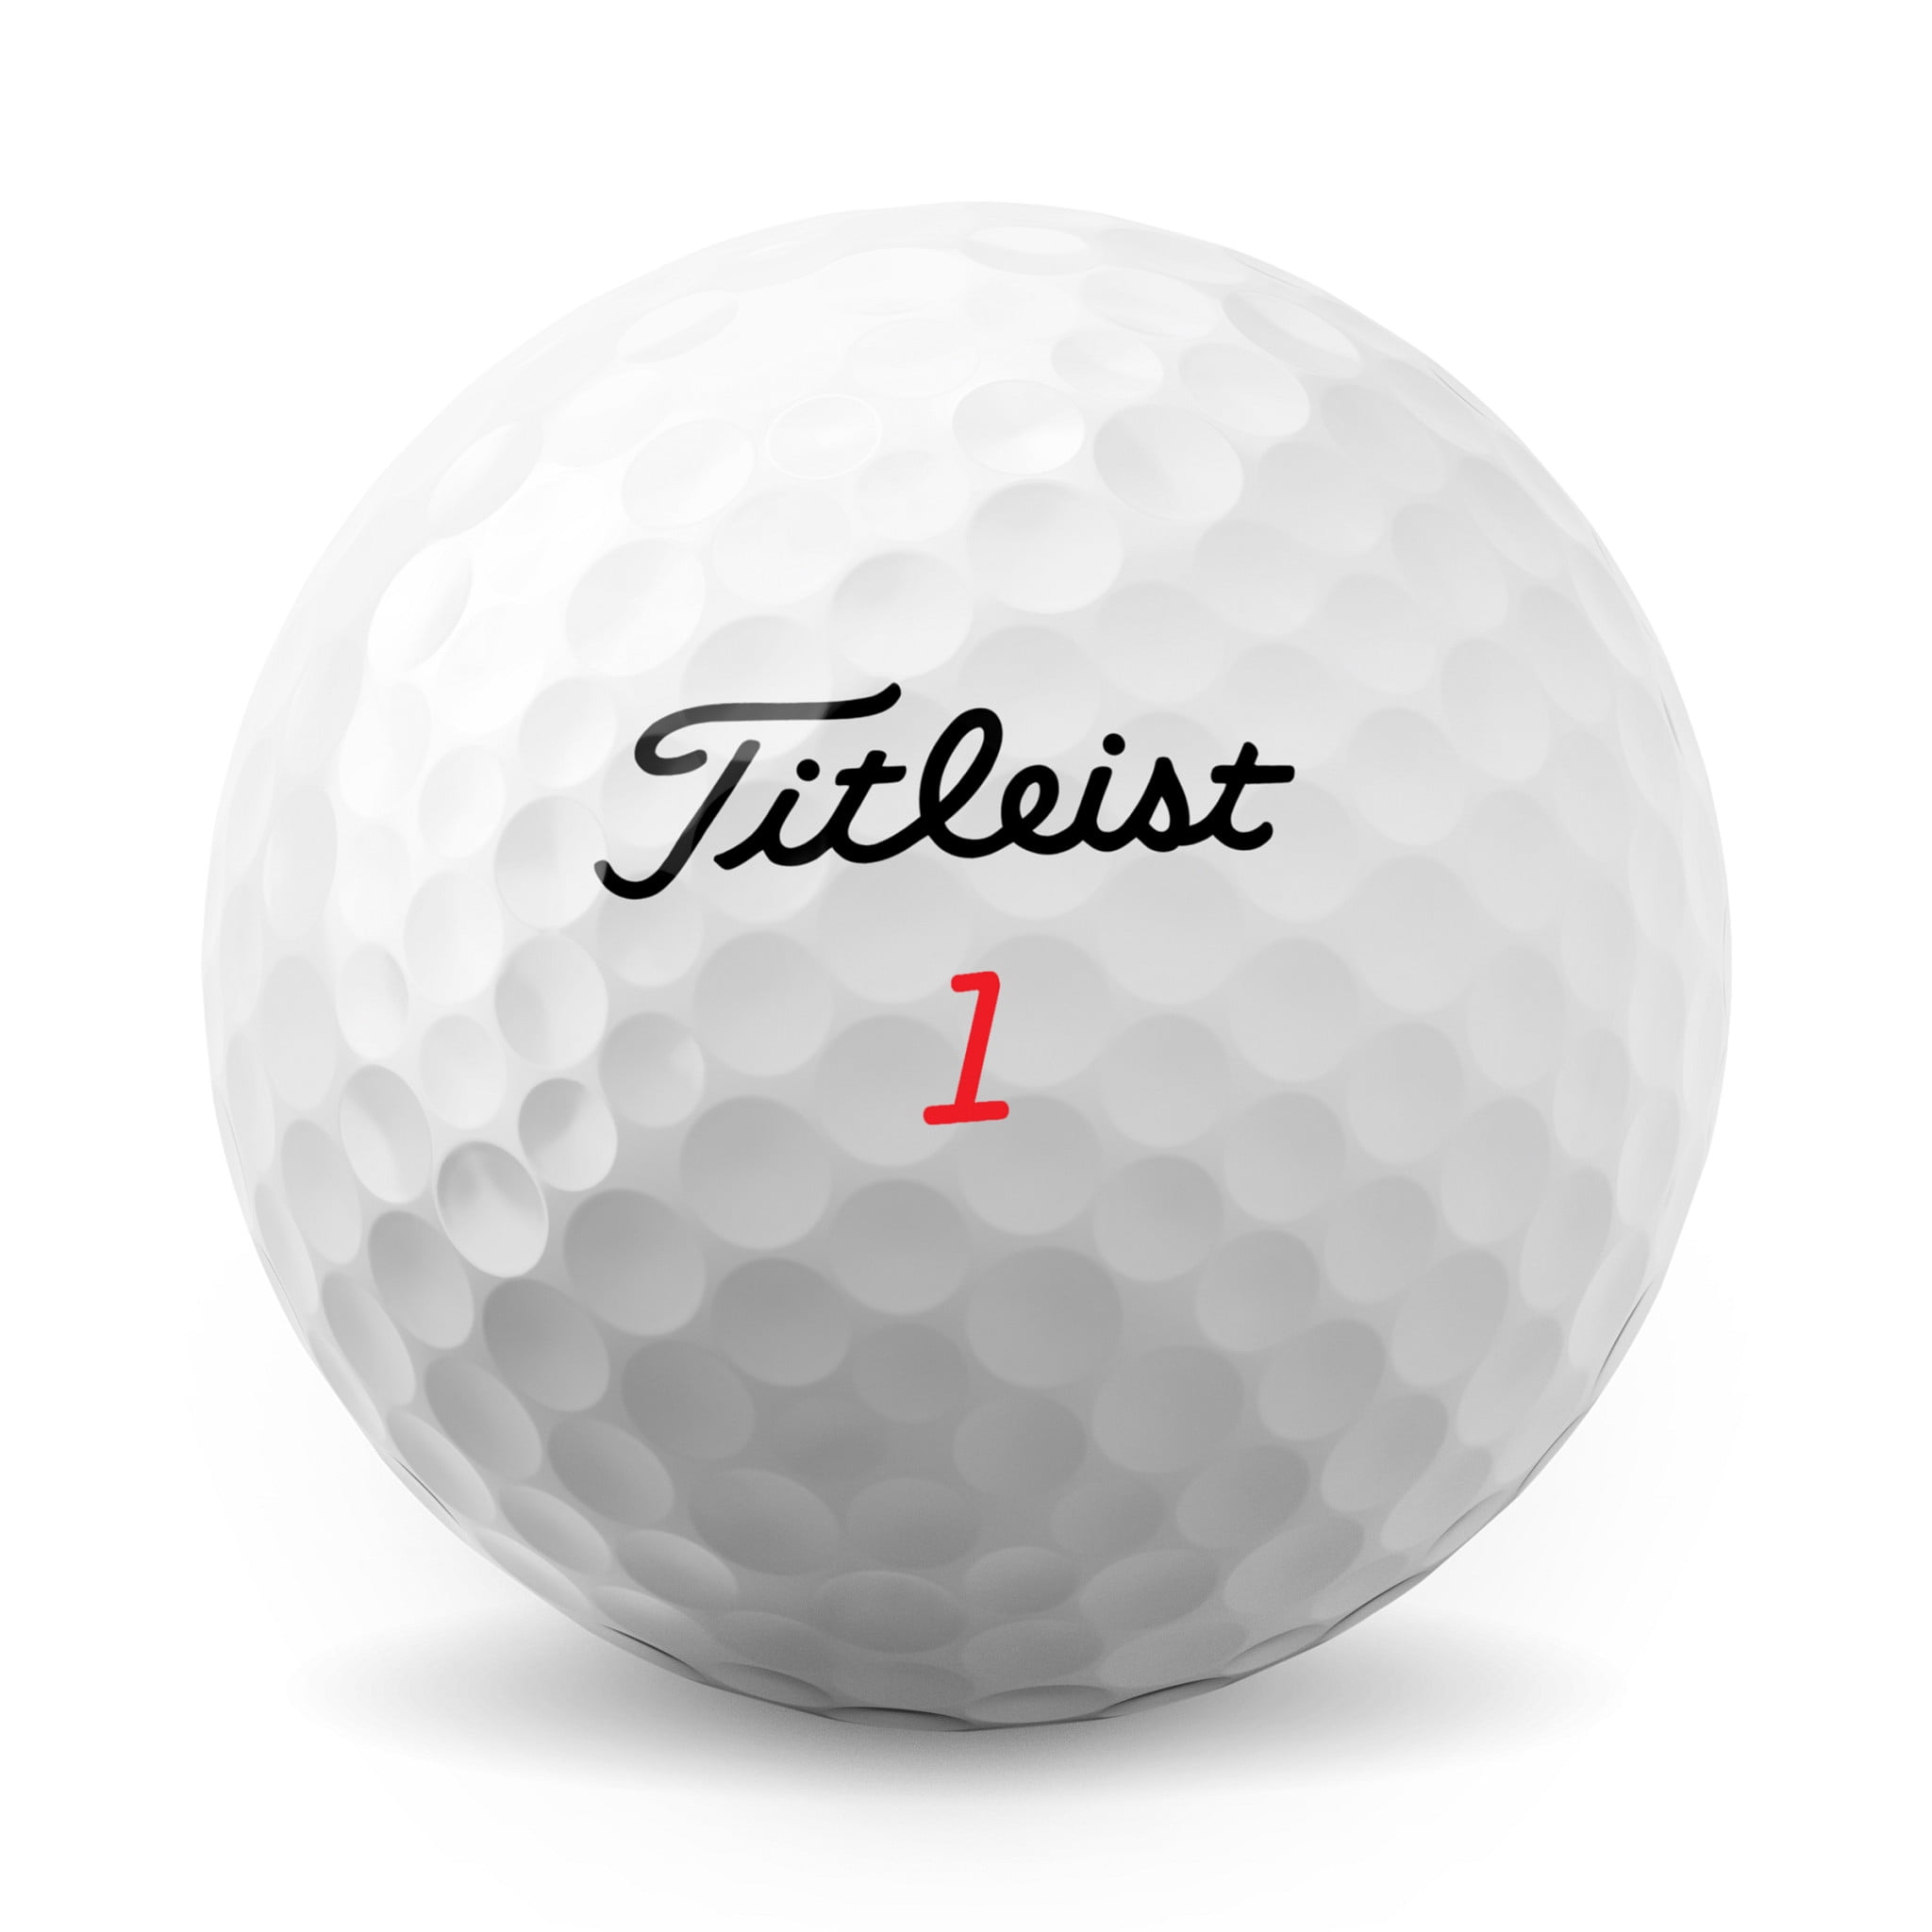 Titleist TruFeel golf Balls, Matte Red, (One Dozen) : : Sports,  Fitness & Outdoors